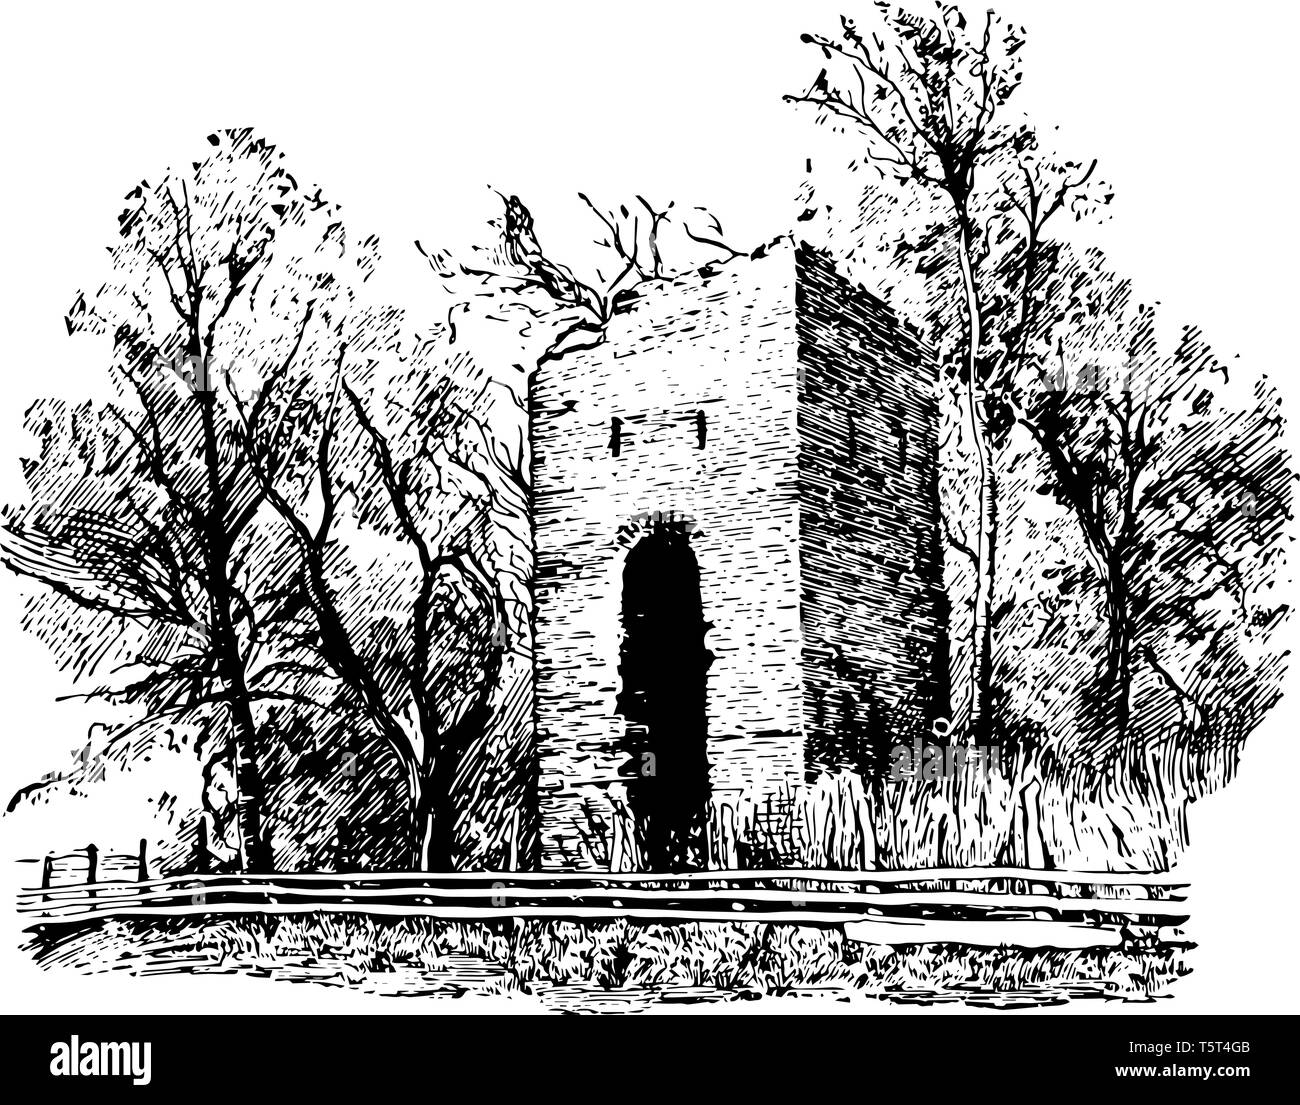 Jamestown è ora un'isola, solo le rovine della chiesa di mattoni eretta nel 1639 e alcune tombe nel cimitero rimangono vintage disegno della linea. Illustrazione Vettoriale